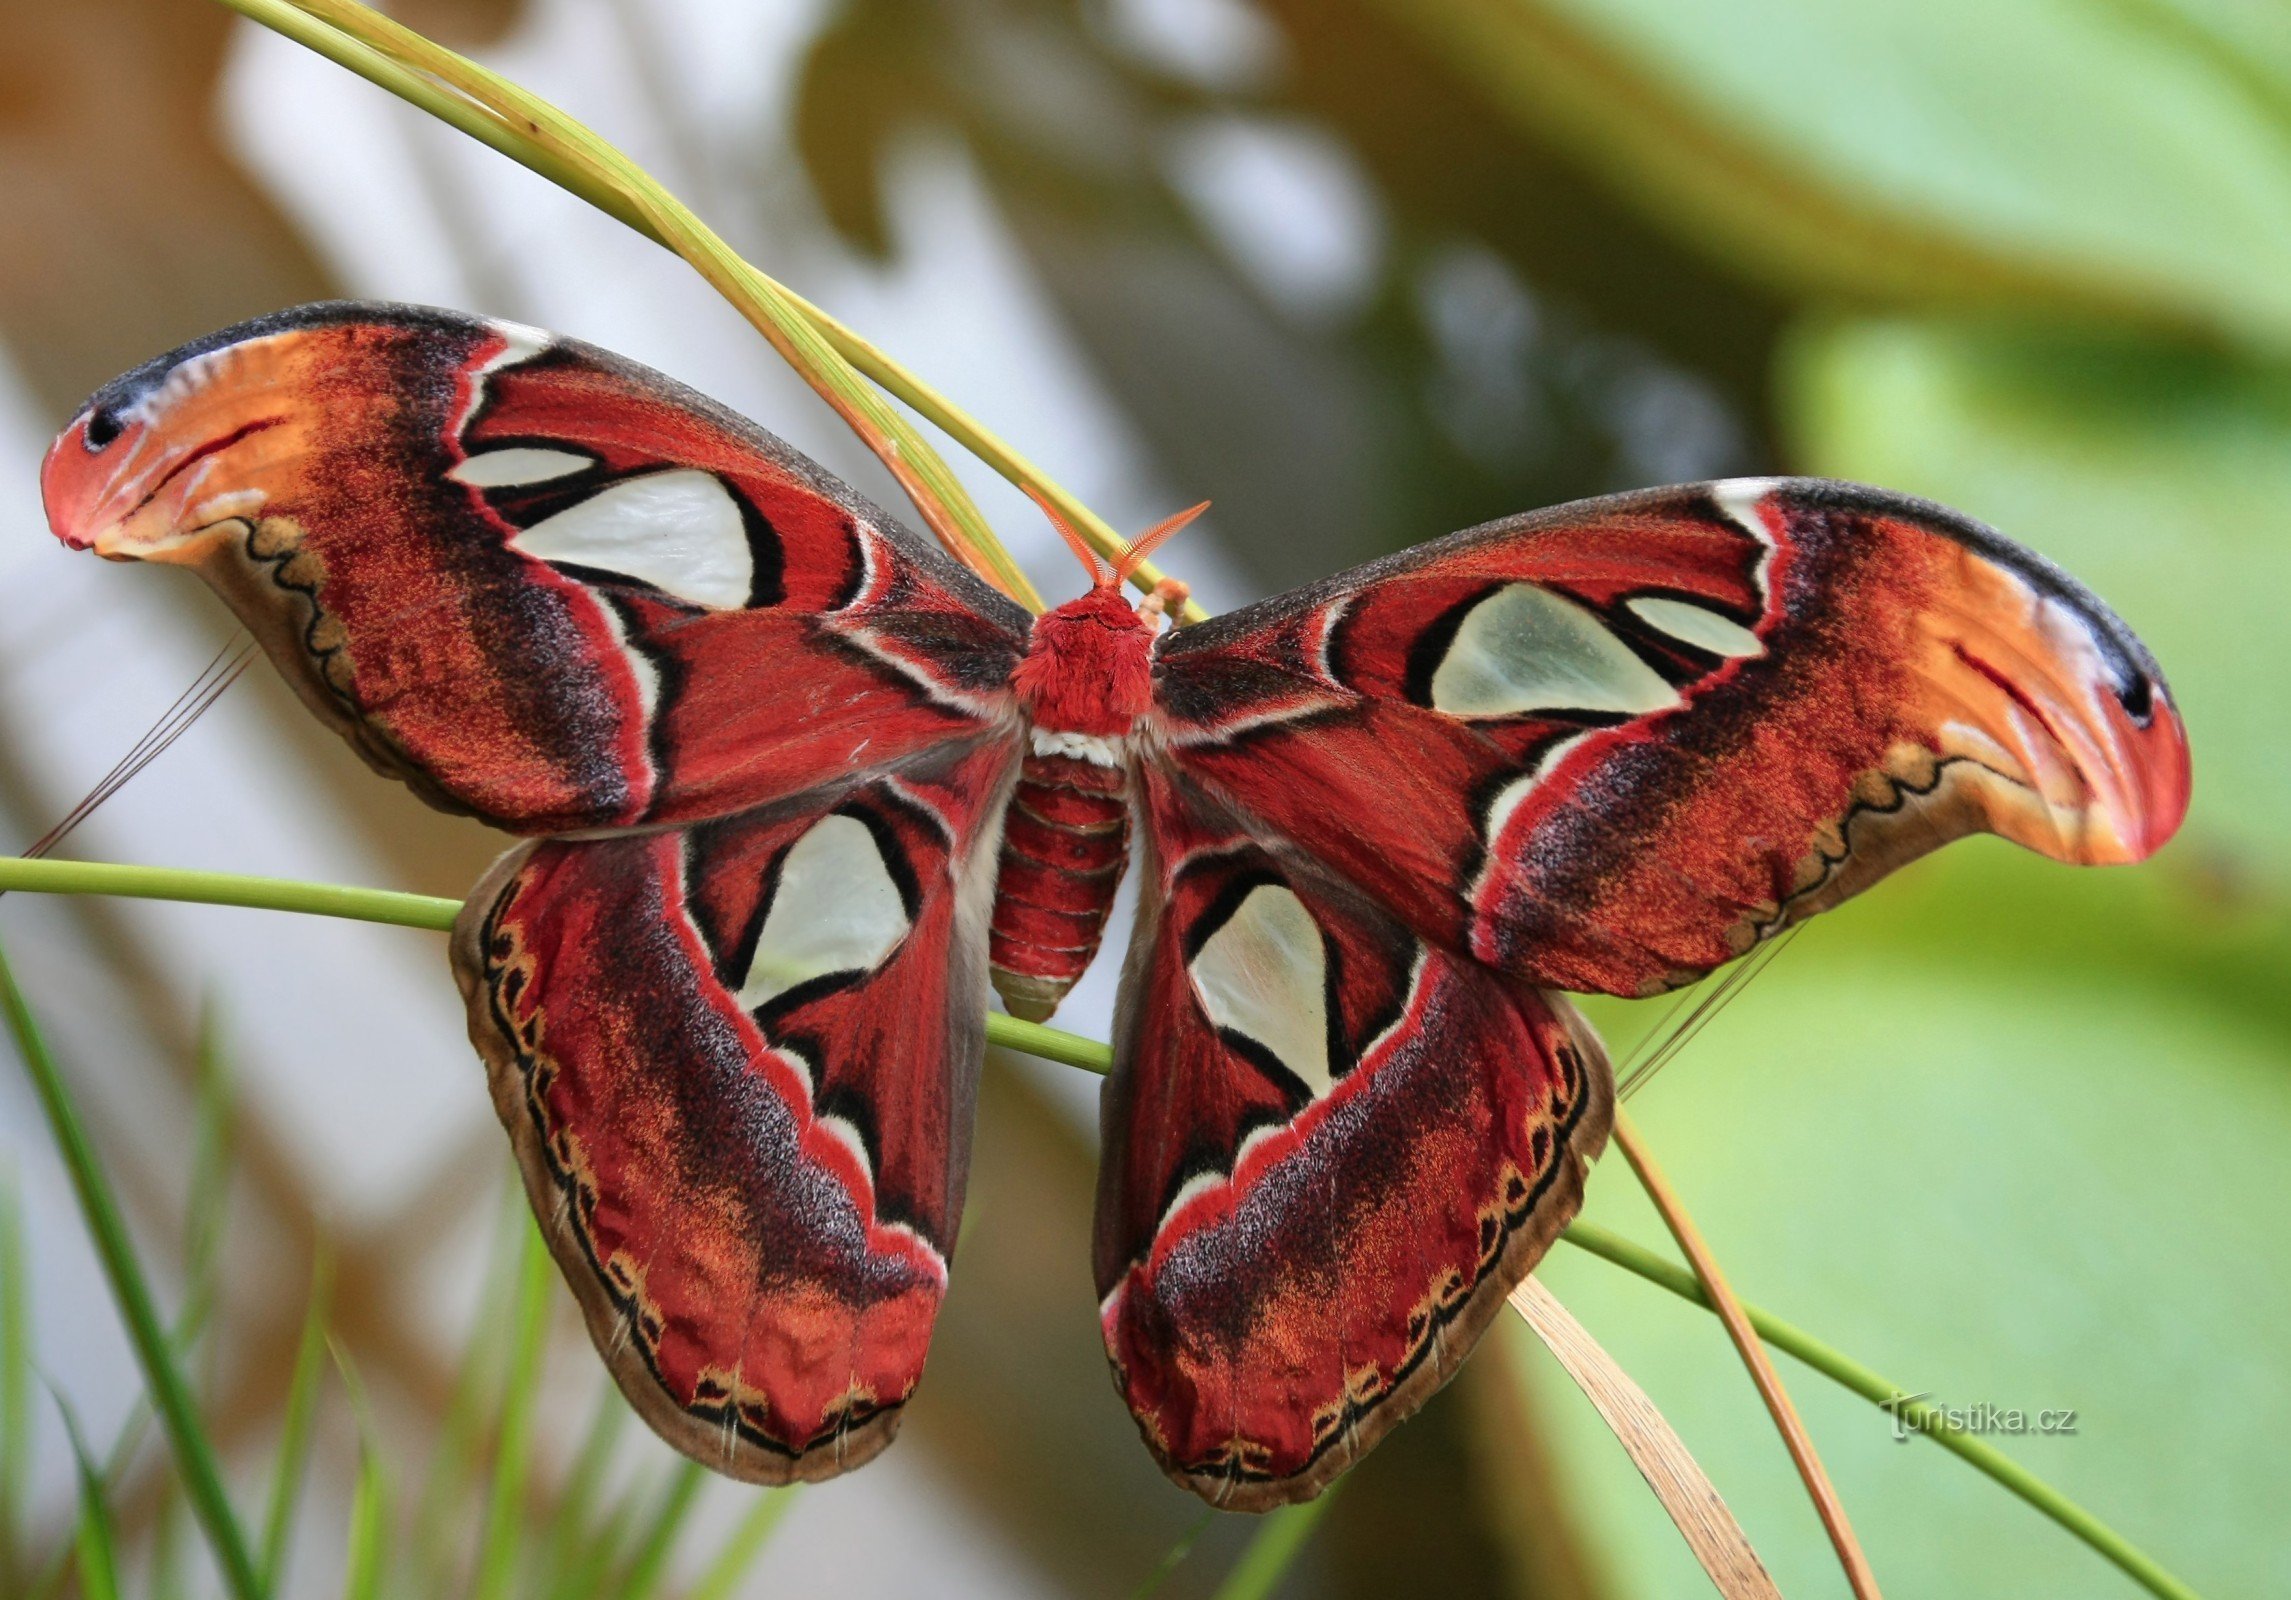 Botanická zahrada Brno - Attacus atlas- největší motýl na světě 12.9.2014